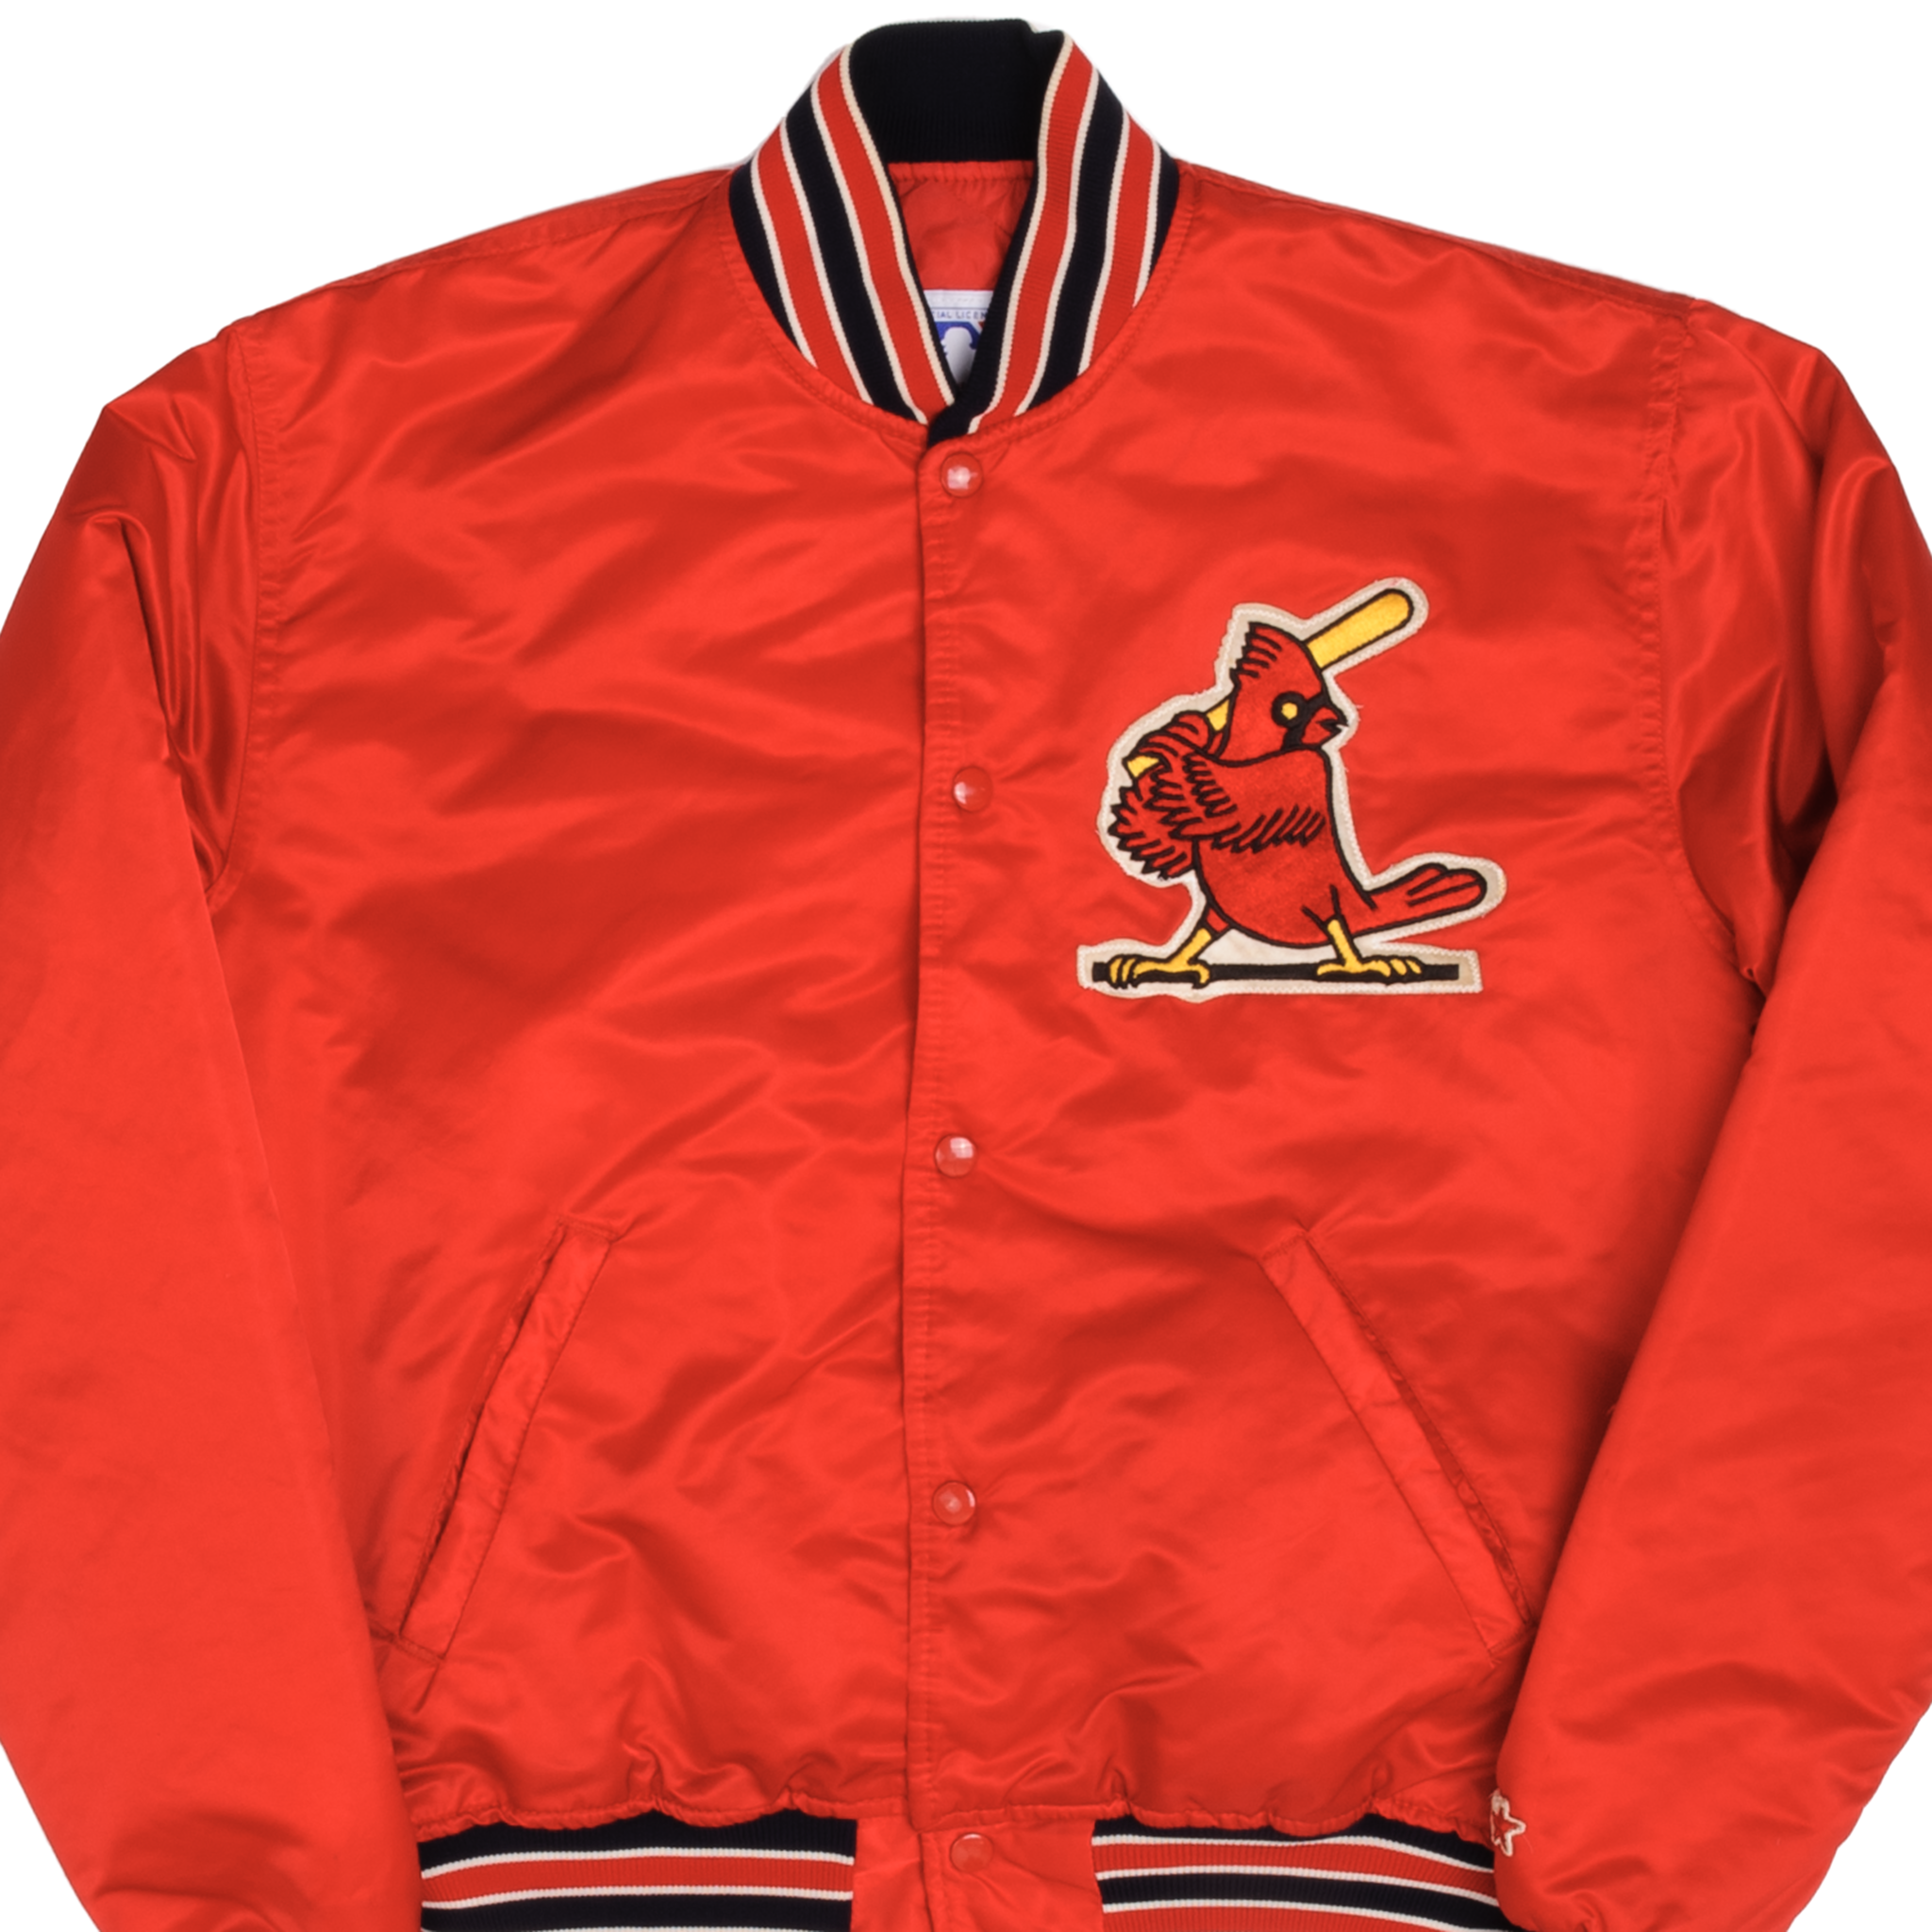 Cheap St. Louis Cardinals Jackets, Discount Cardinals Jackets